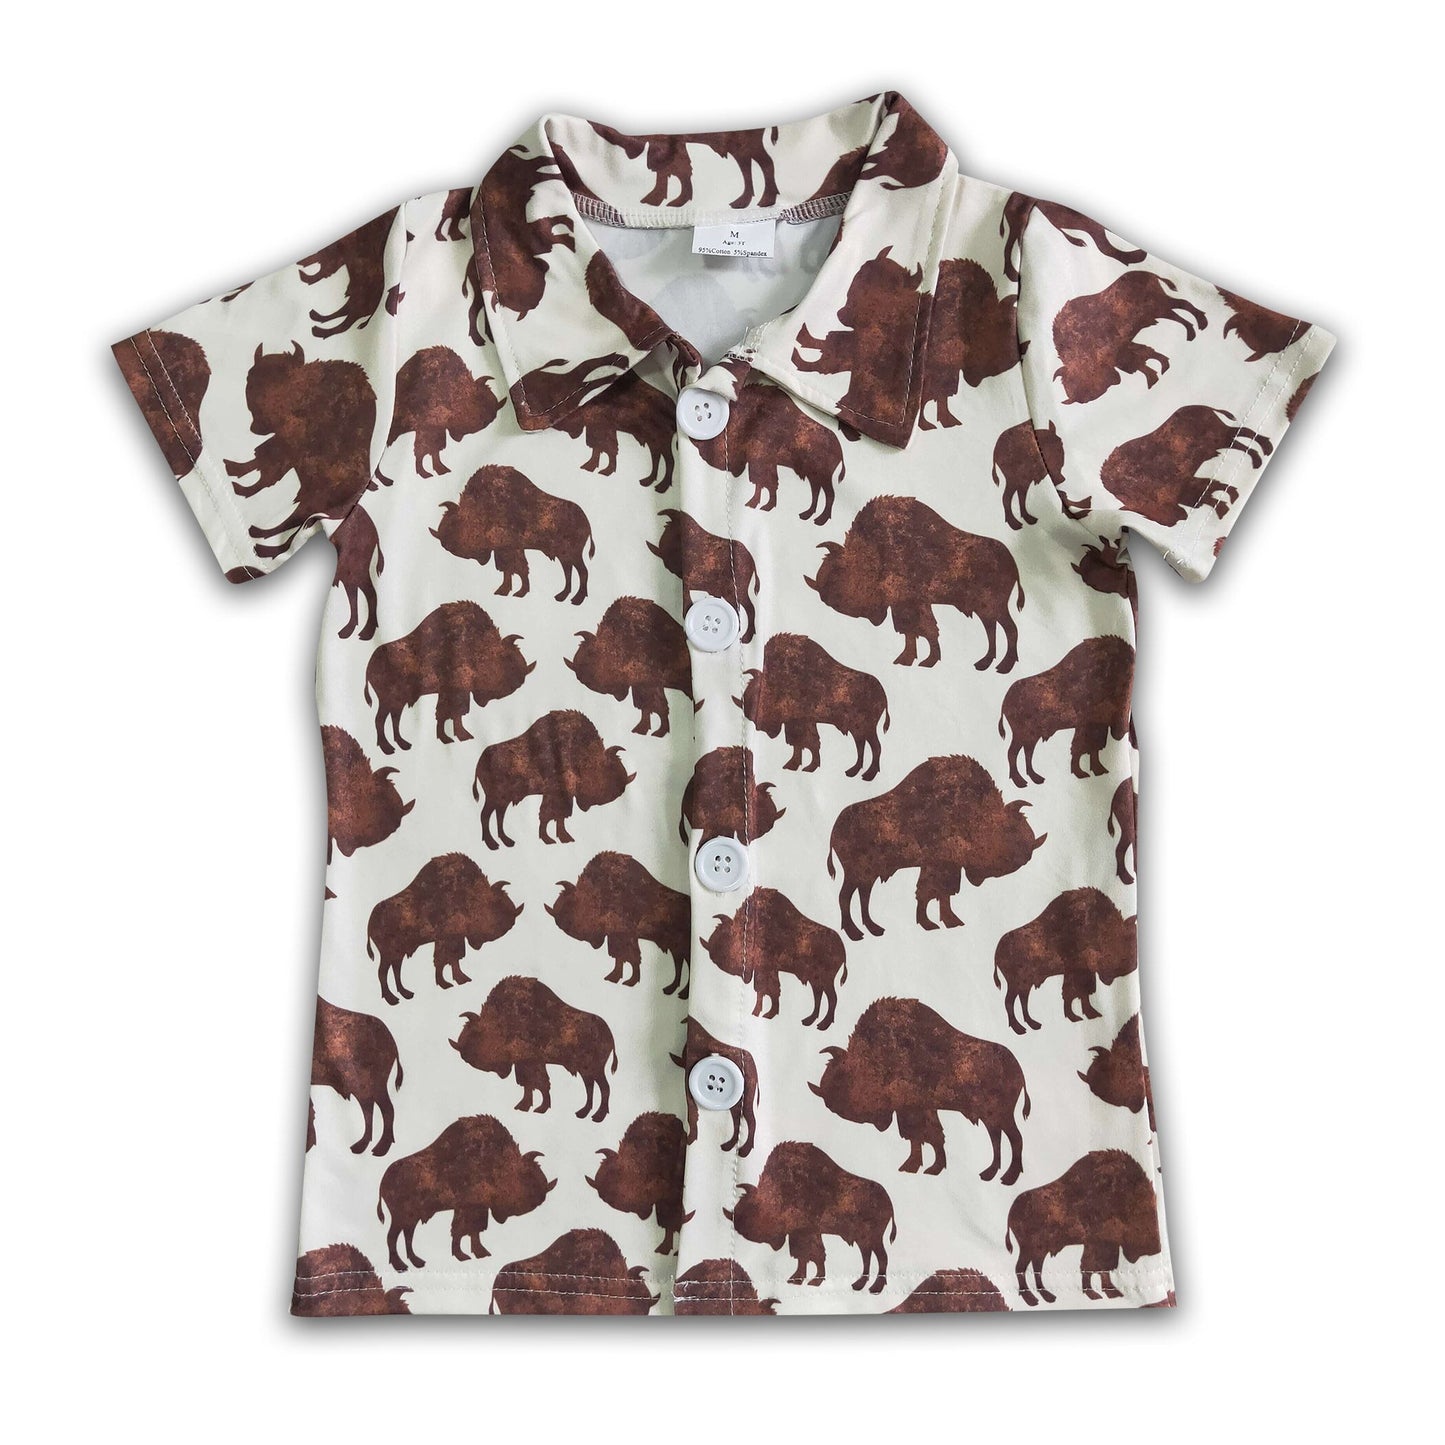 Cow print kids boy boutique polo shirt